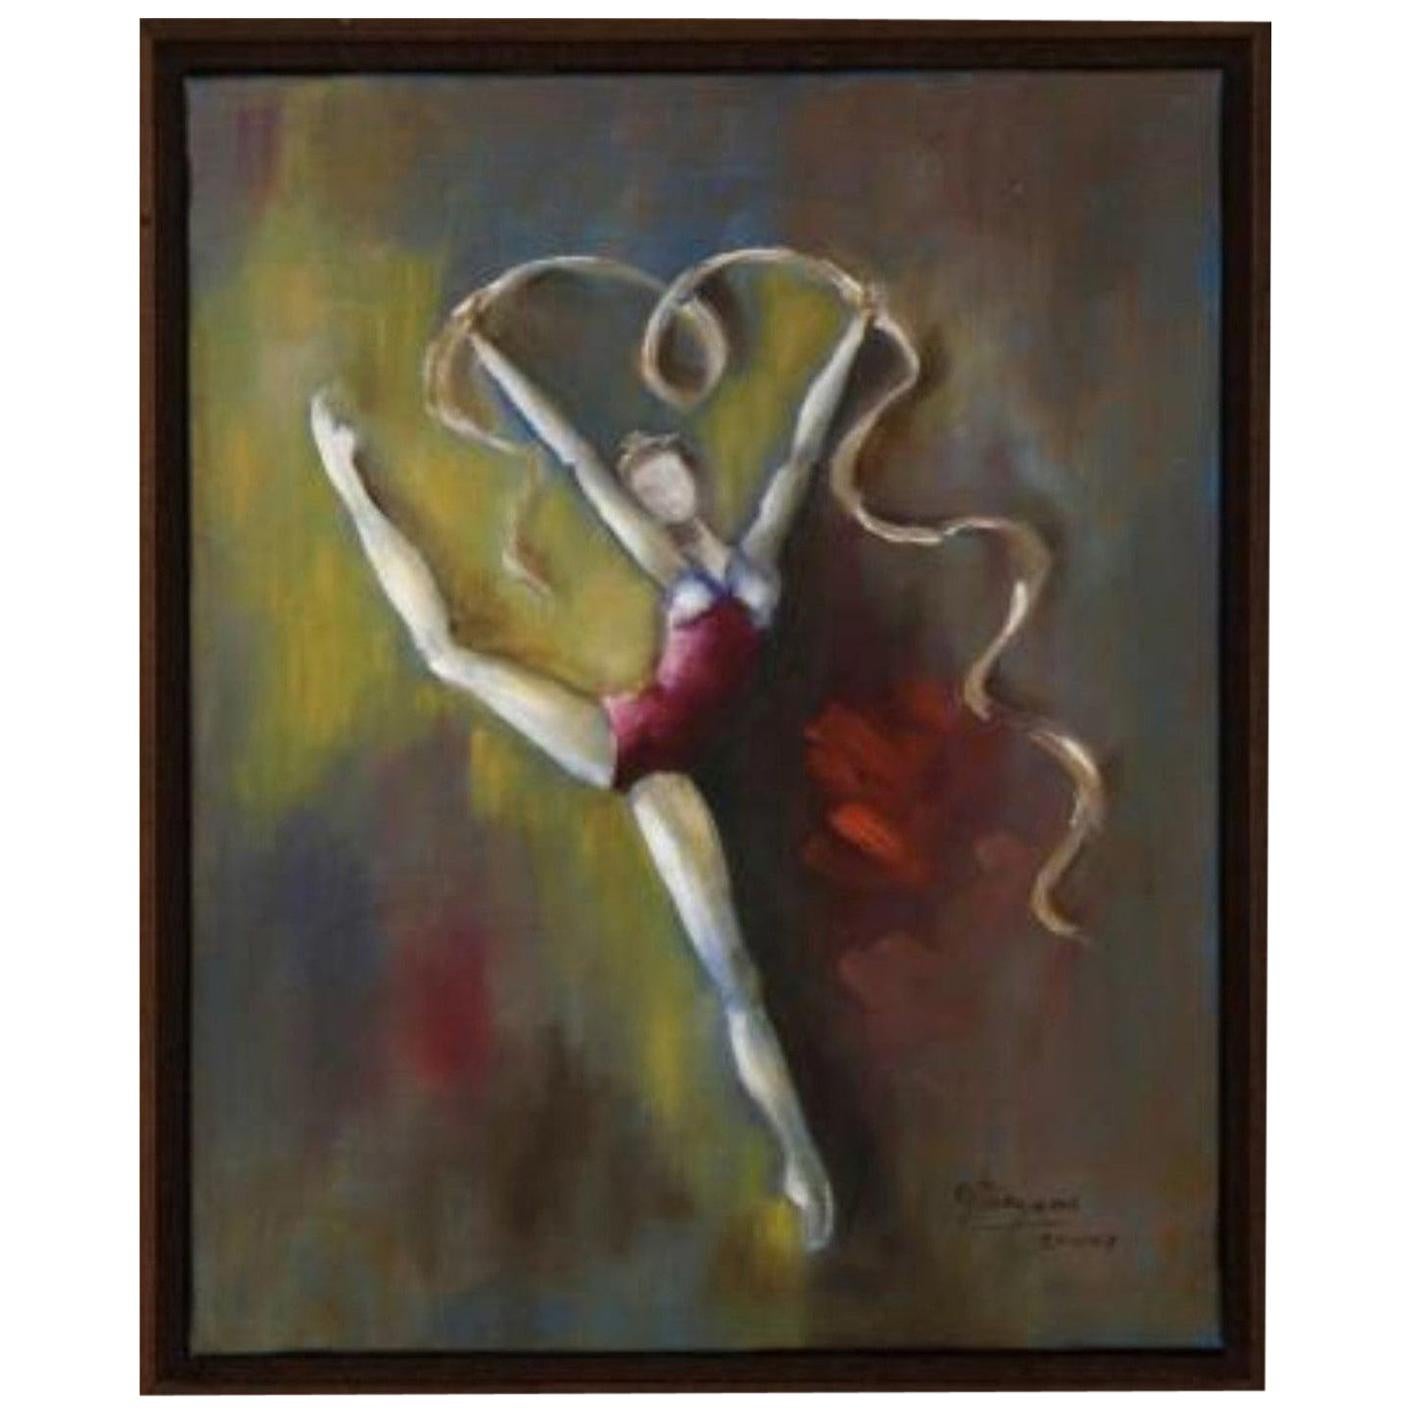 Modernistische Ballerina der Moderne, Öl auf Leinwand „Bailarina“ von Olga Pargana, datiert 2002, signiert